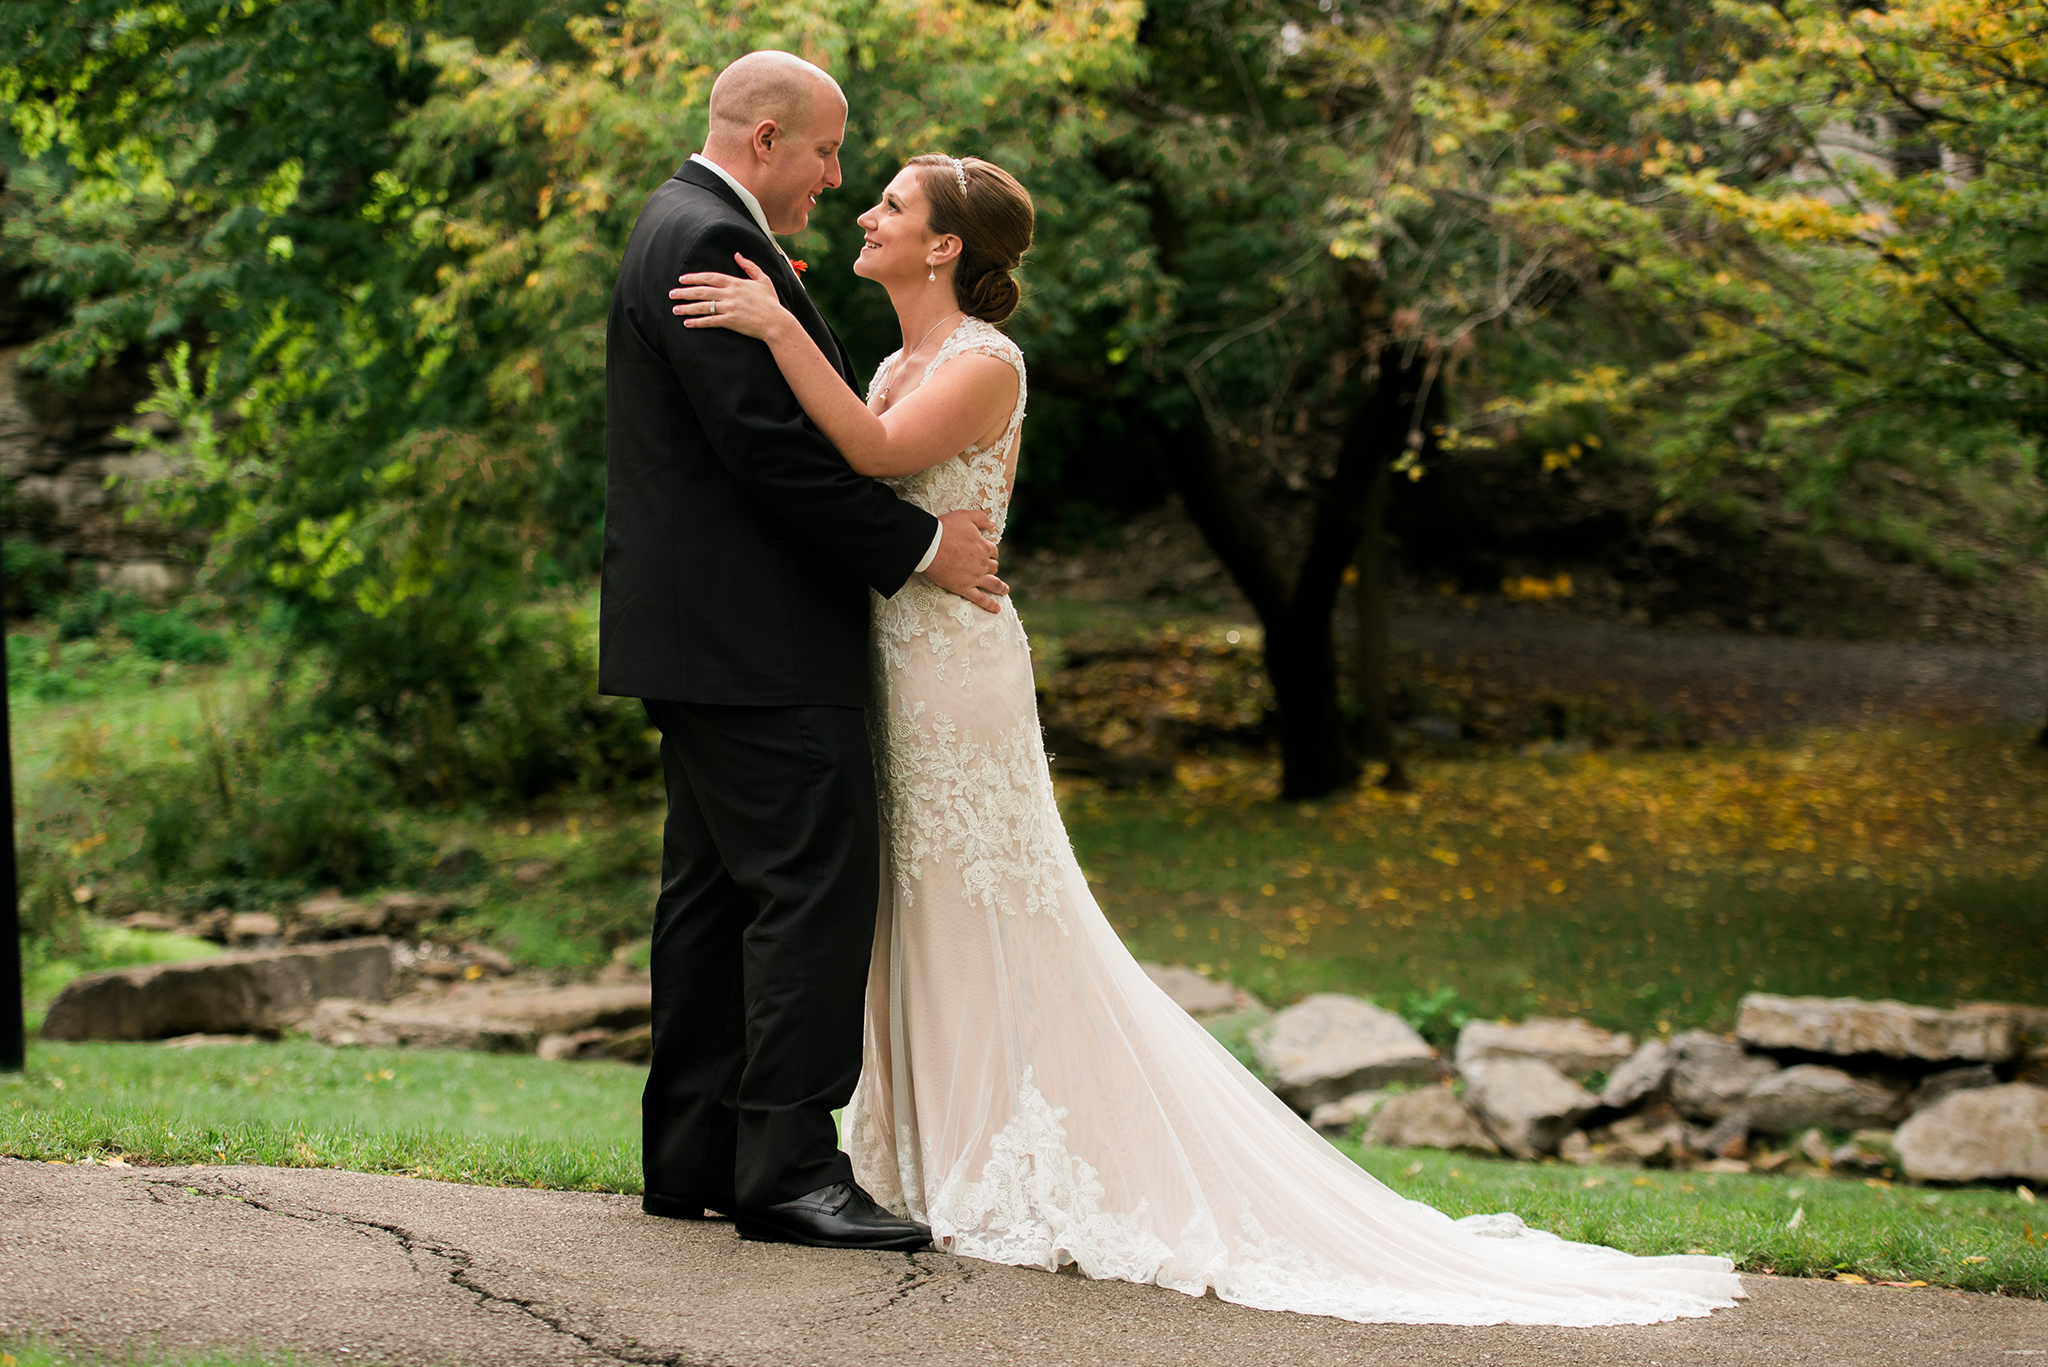 A Gorgeous October Wedding|Buffalo Wedding Photography Image